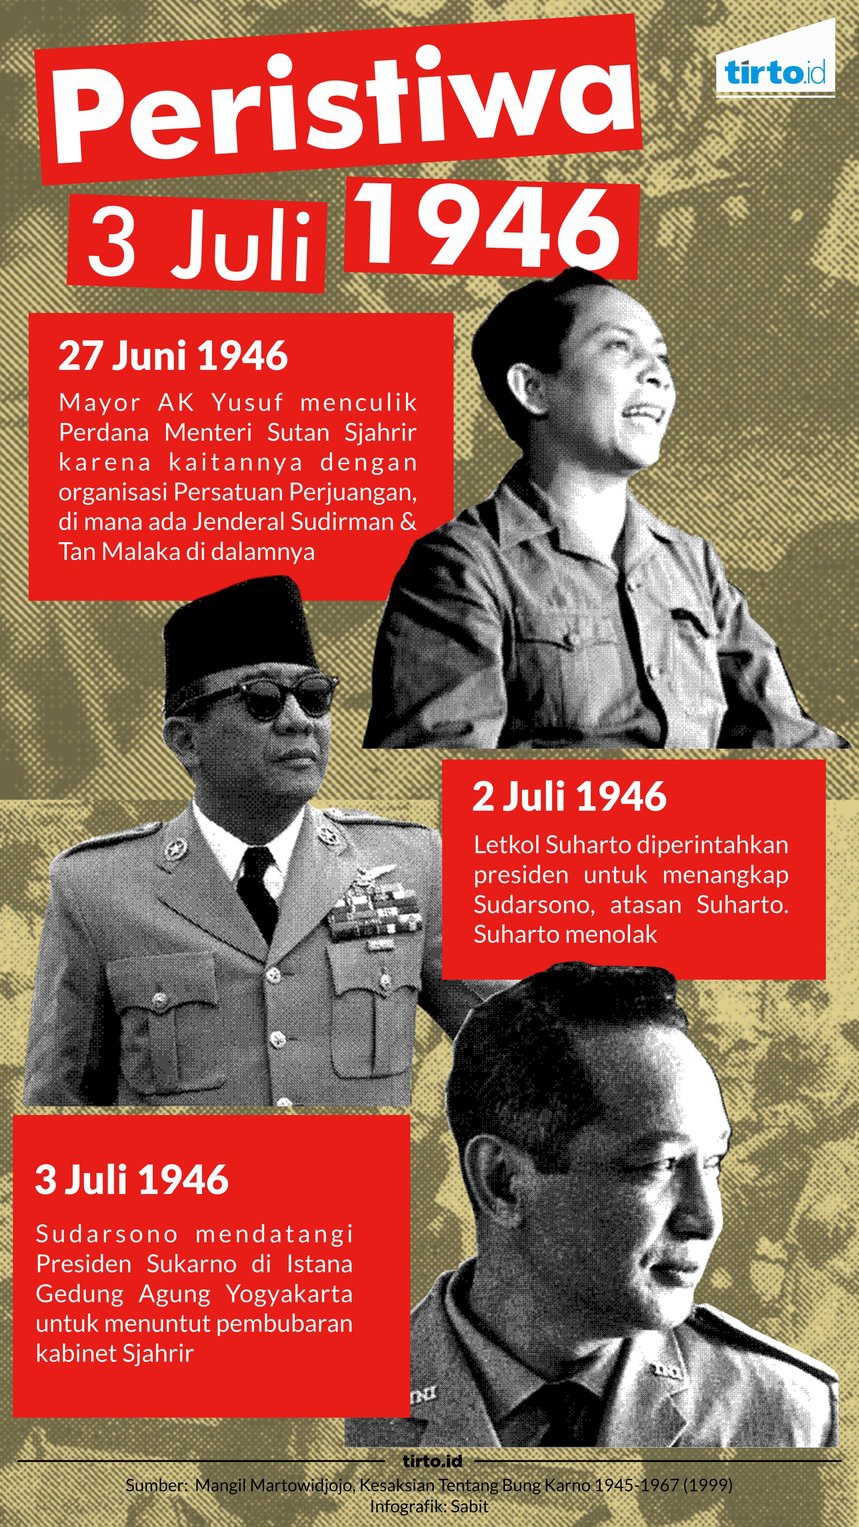 Peristiwa 3 Juli 1946, Kudeta Pertama di Indonesia